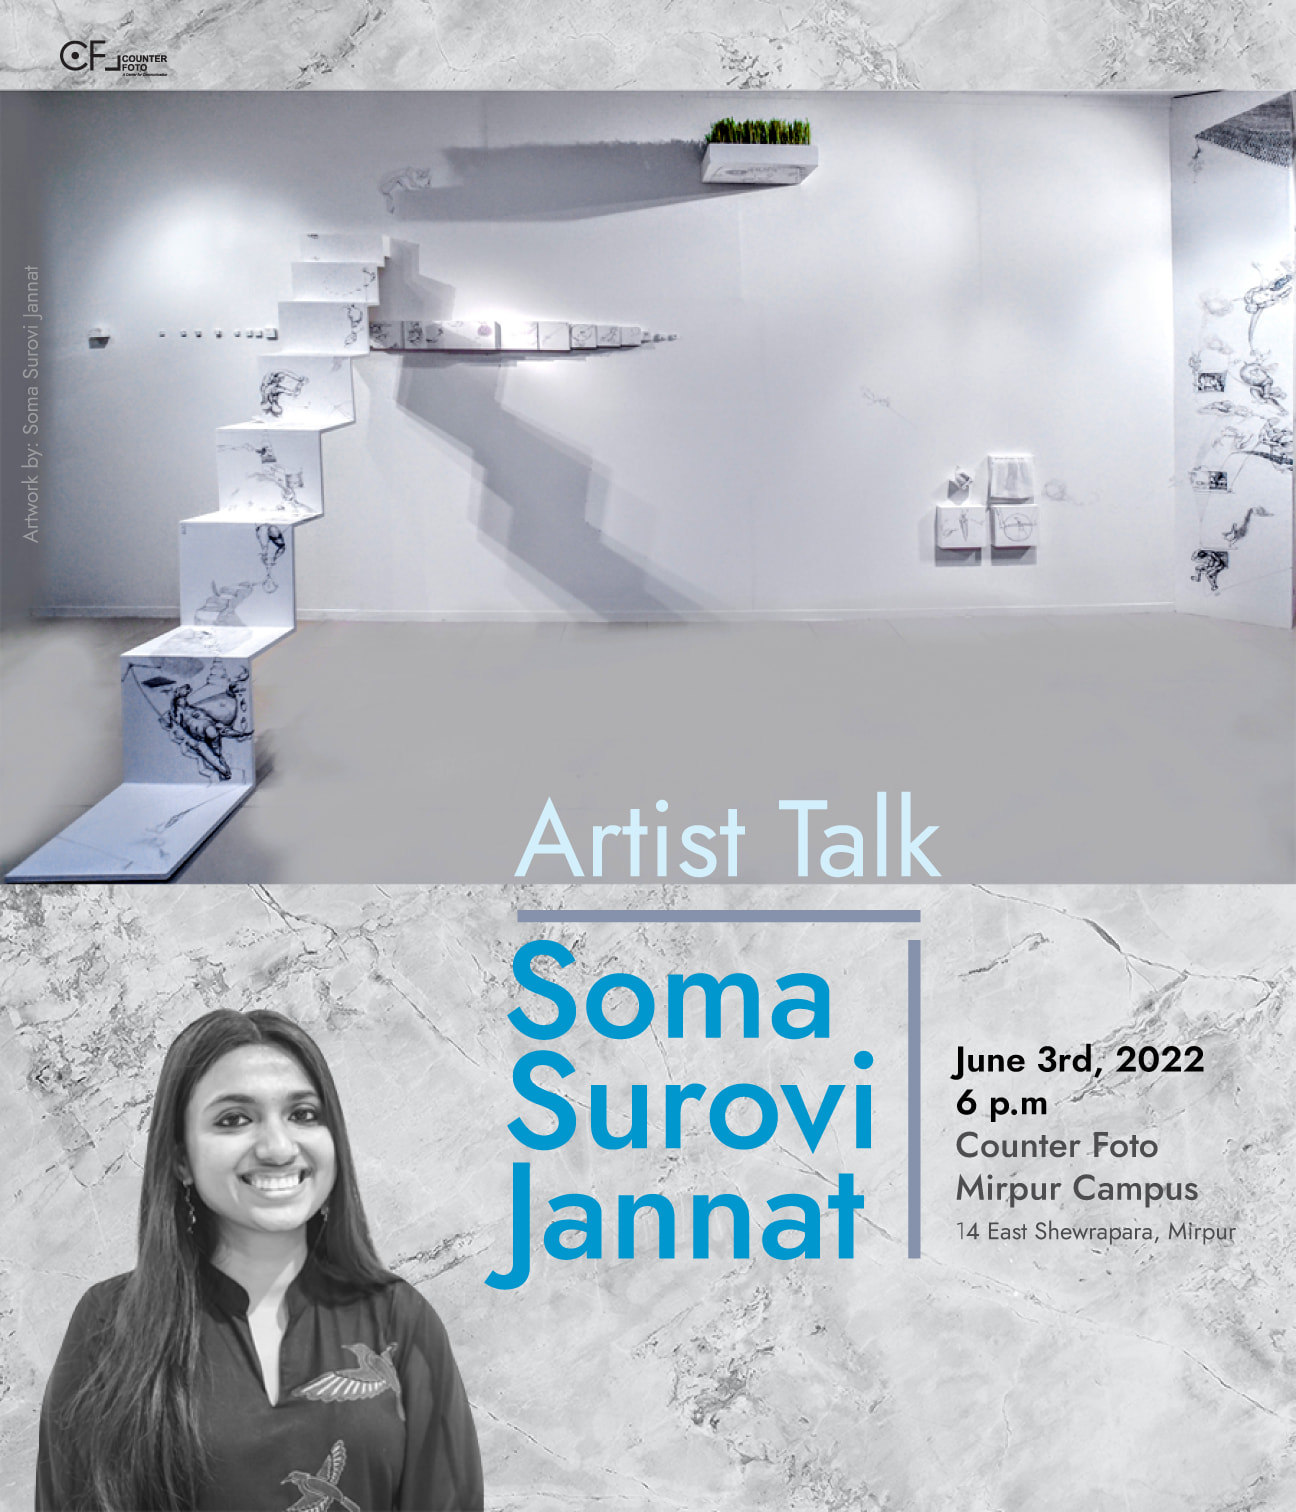 ARTIST TALK by Soma Surovi Jannat